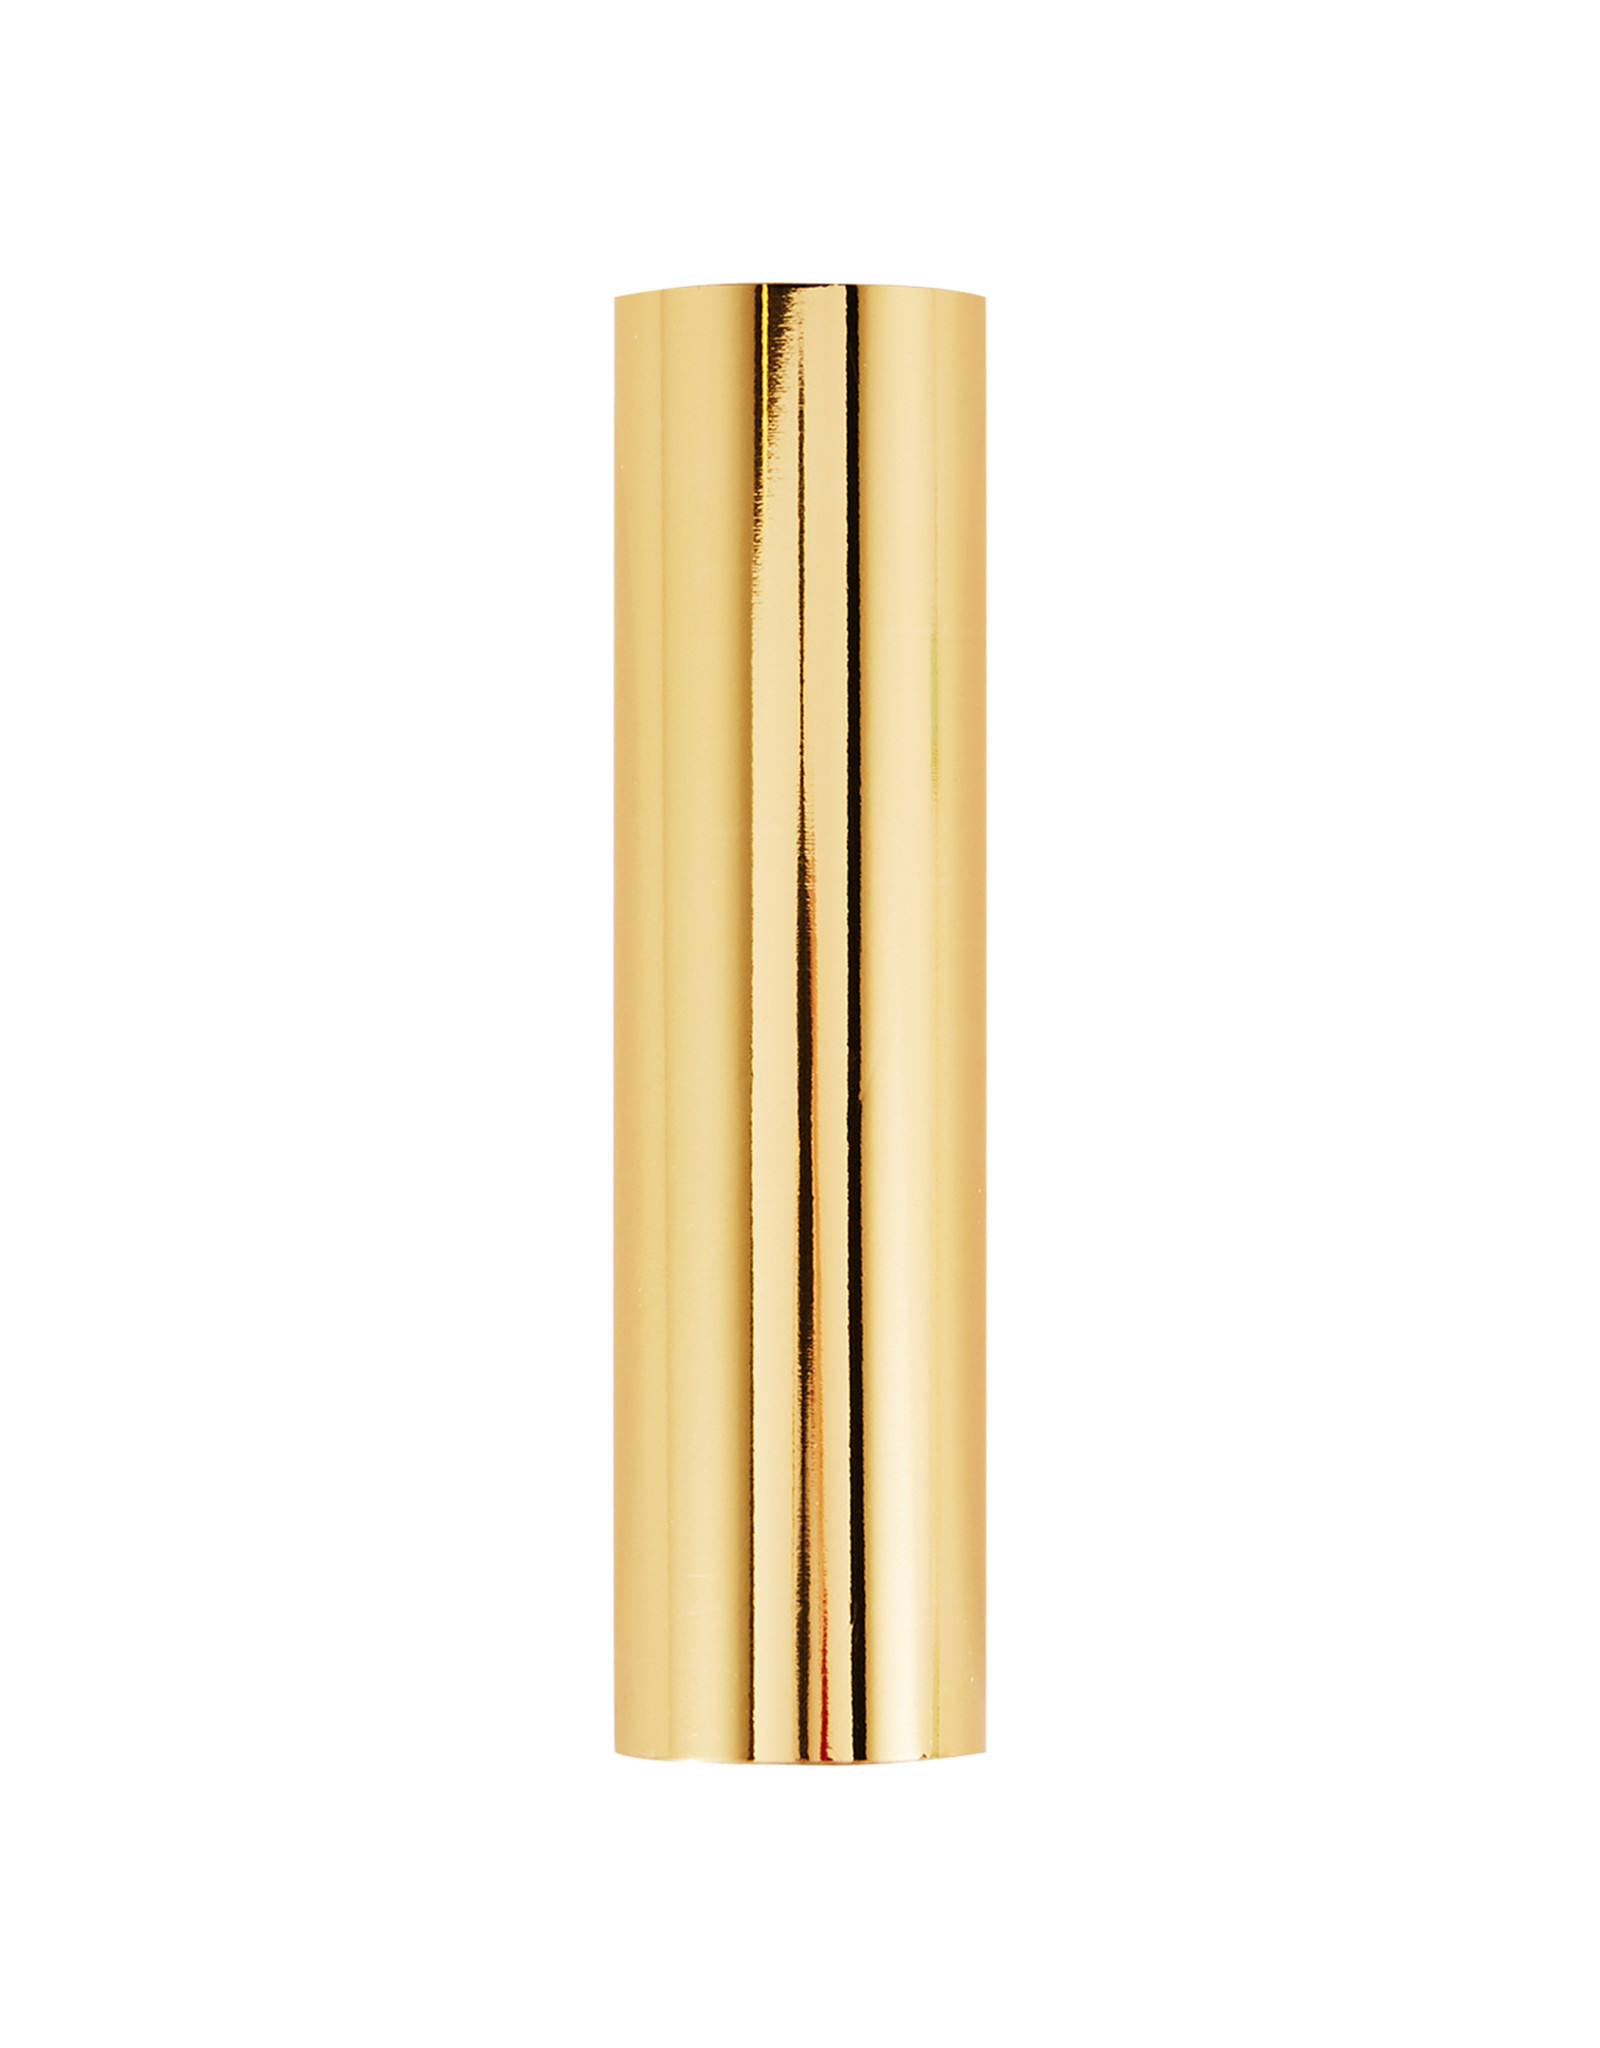 Spellbinders Glimmer Hot Foil - Polished Brass